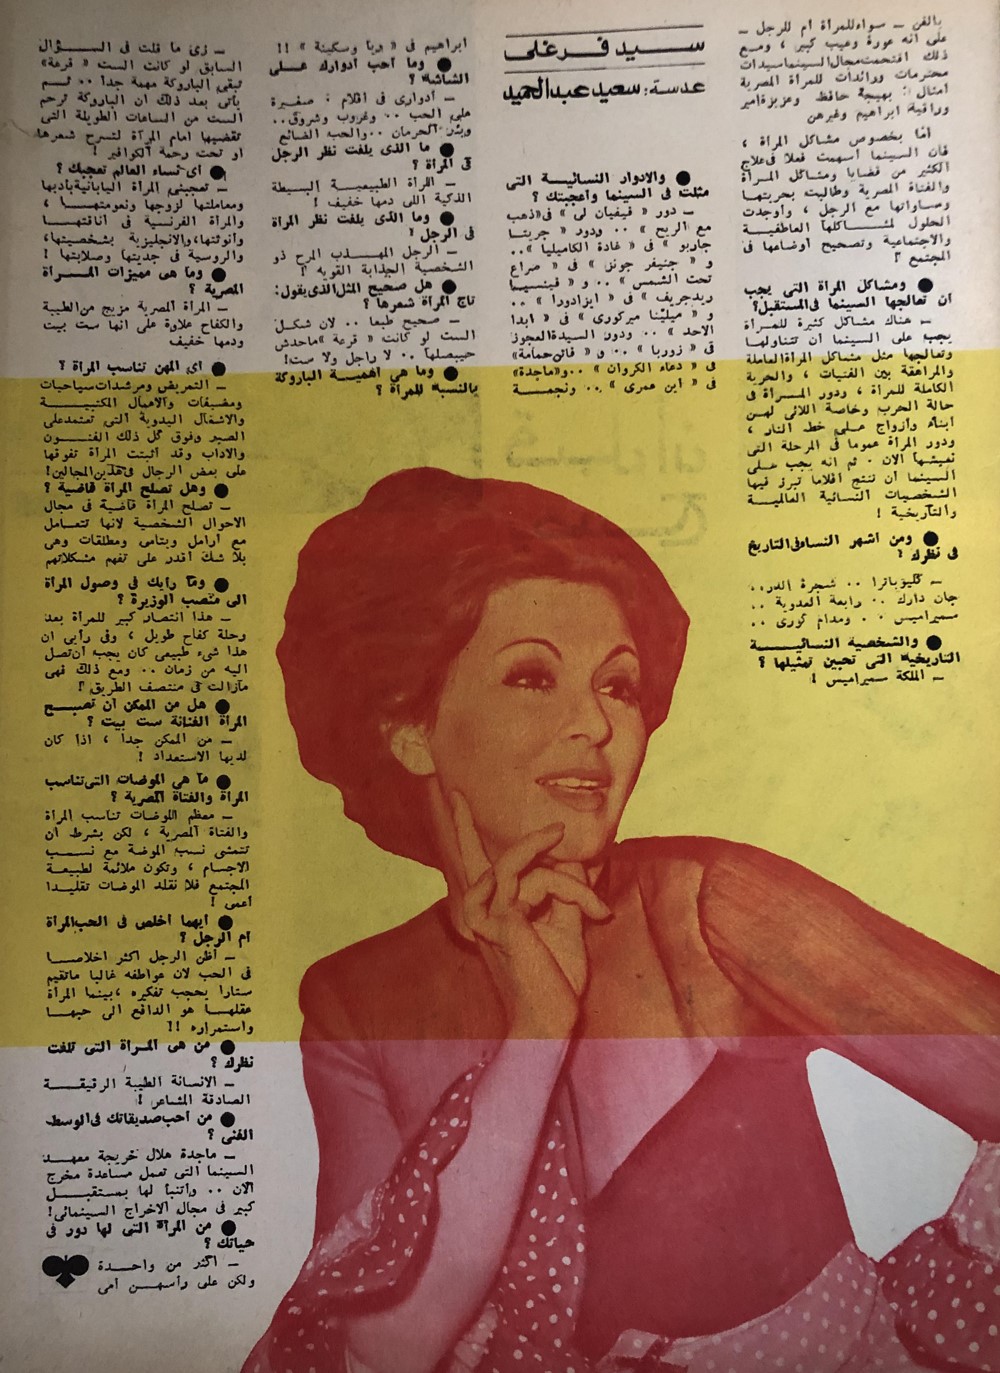 الحب - حوار صحفي : سعاد حسني .. الرجل أكثر إخلاصاً في الحب 1972 م 261